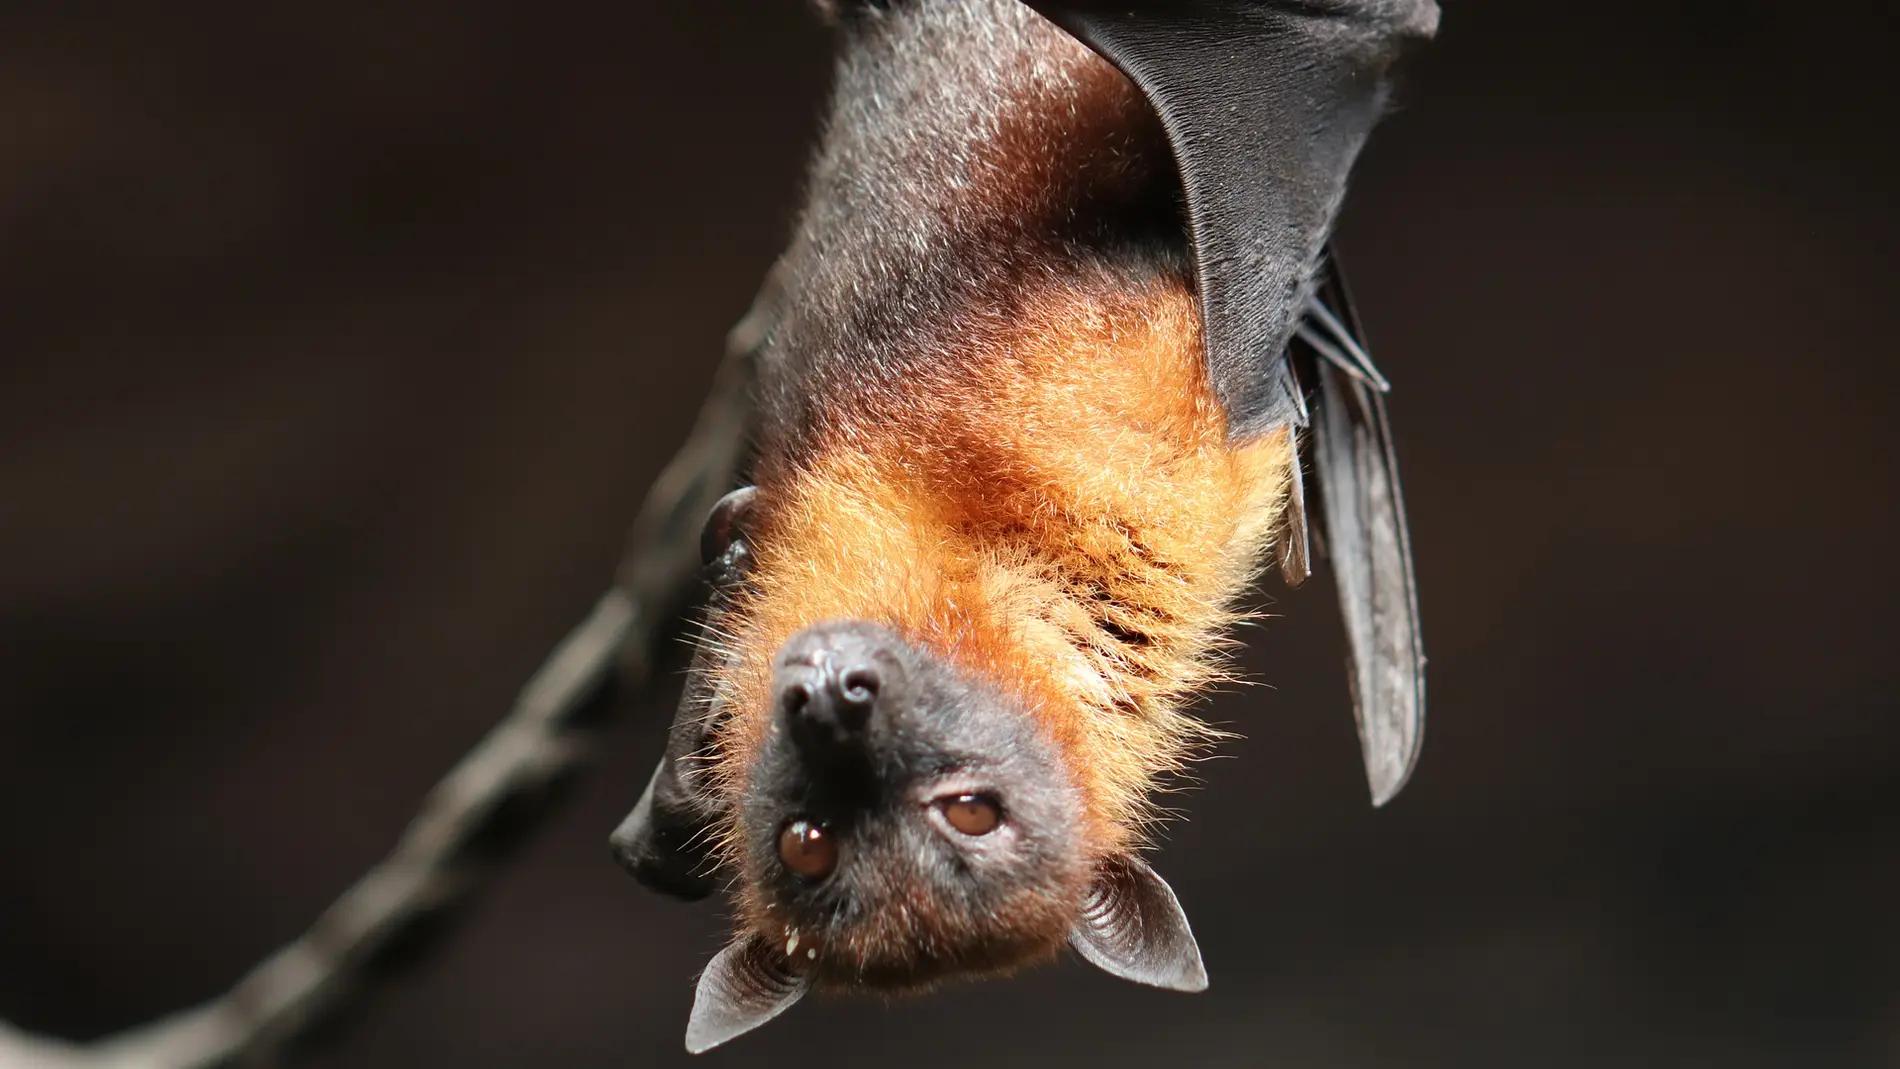 Científicos descubren un virus similar al SARS-CoV-2 en murciélagos de Laos